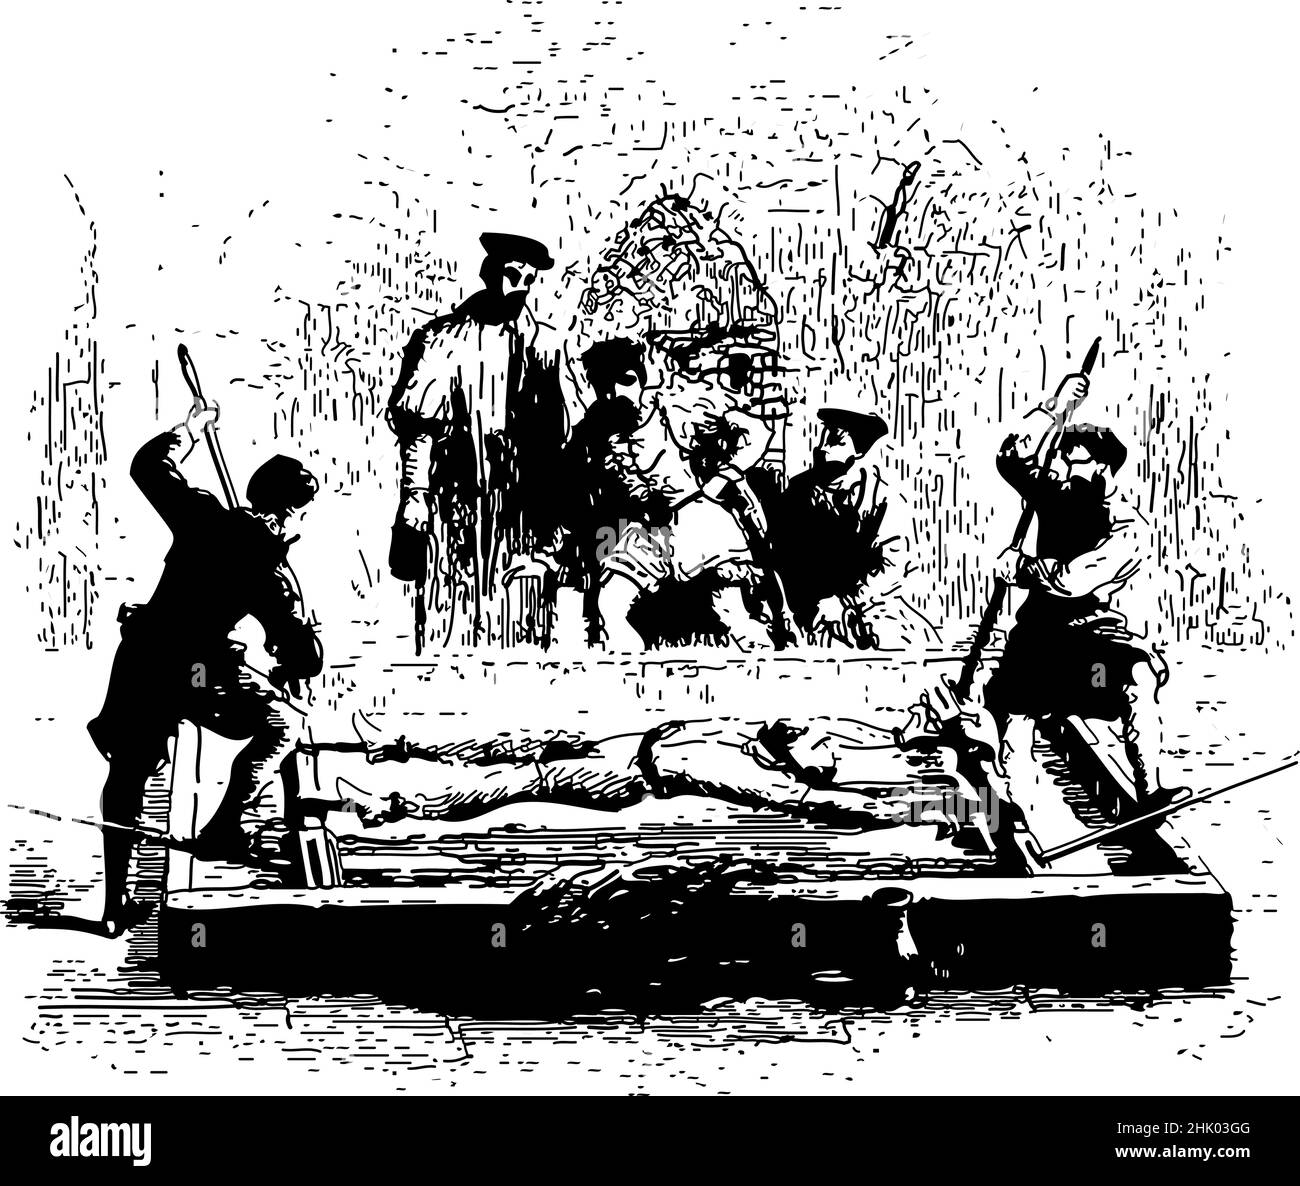 La tortura sádica de la era medieval de la Edad Media. Hombre estirado en un estante. Se utiliza para forzar confesiones o información, un medio de interrogatorio. Ilustración del Vector